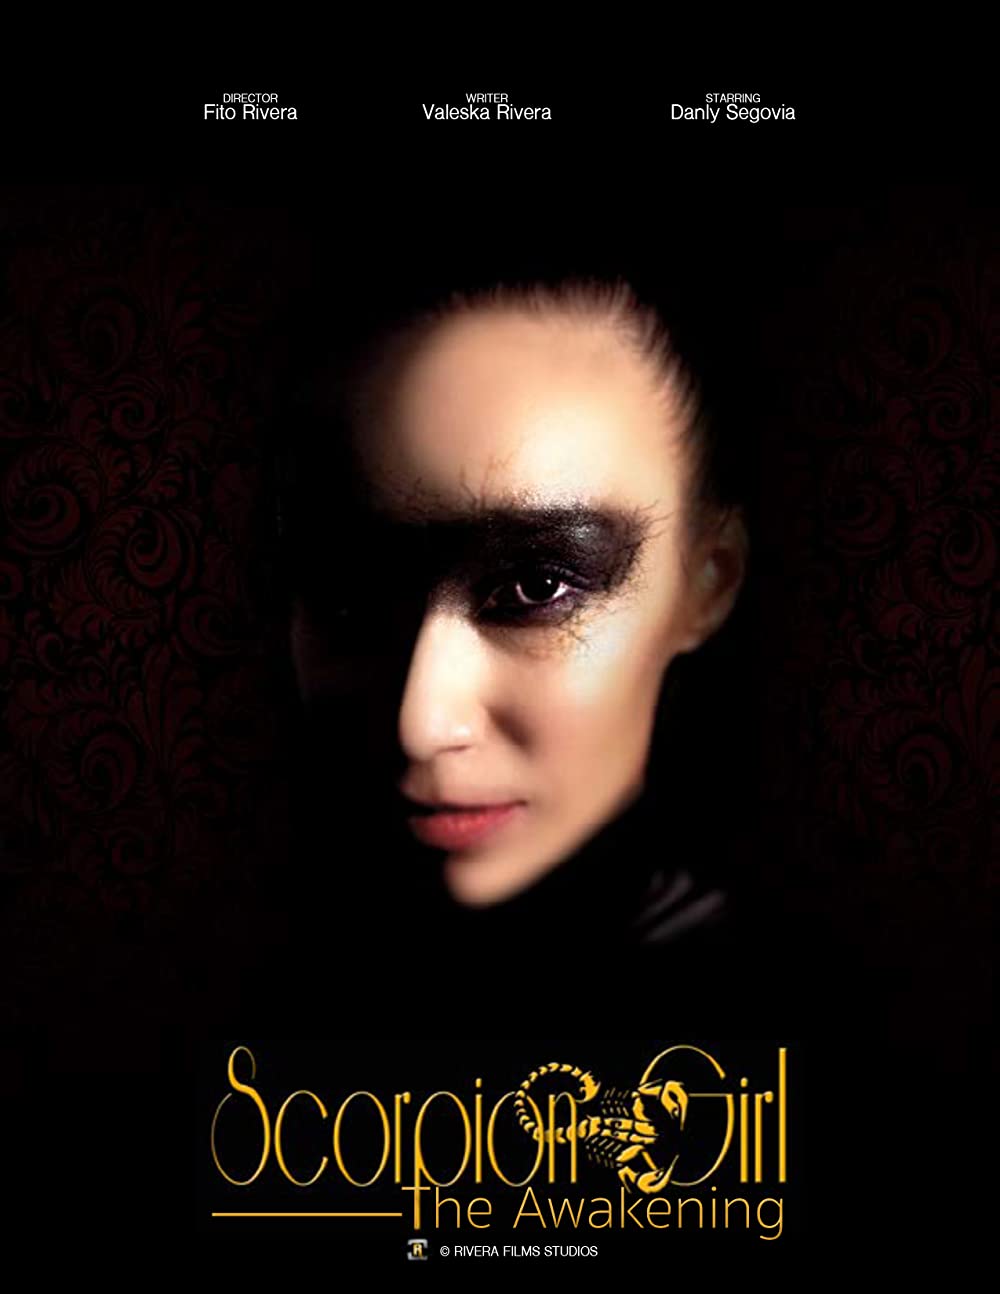 affiche du film Scorpion Girl: The Awakening